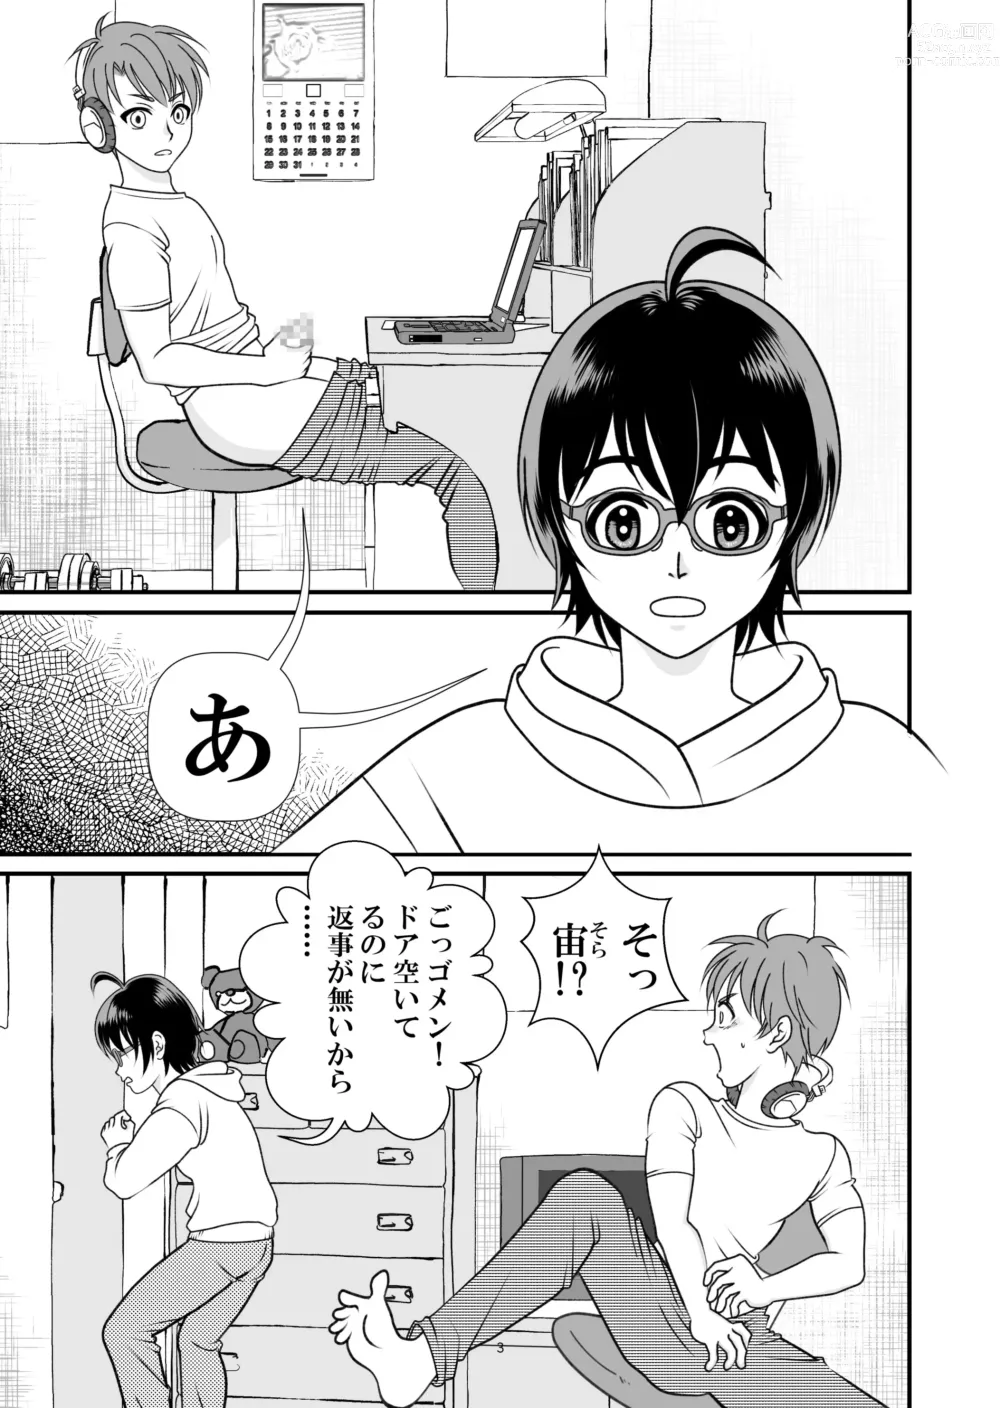 Page 3 of doujinshi Ai no Sorairo 1